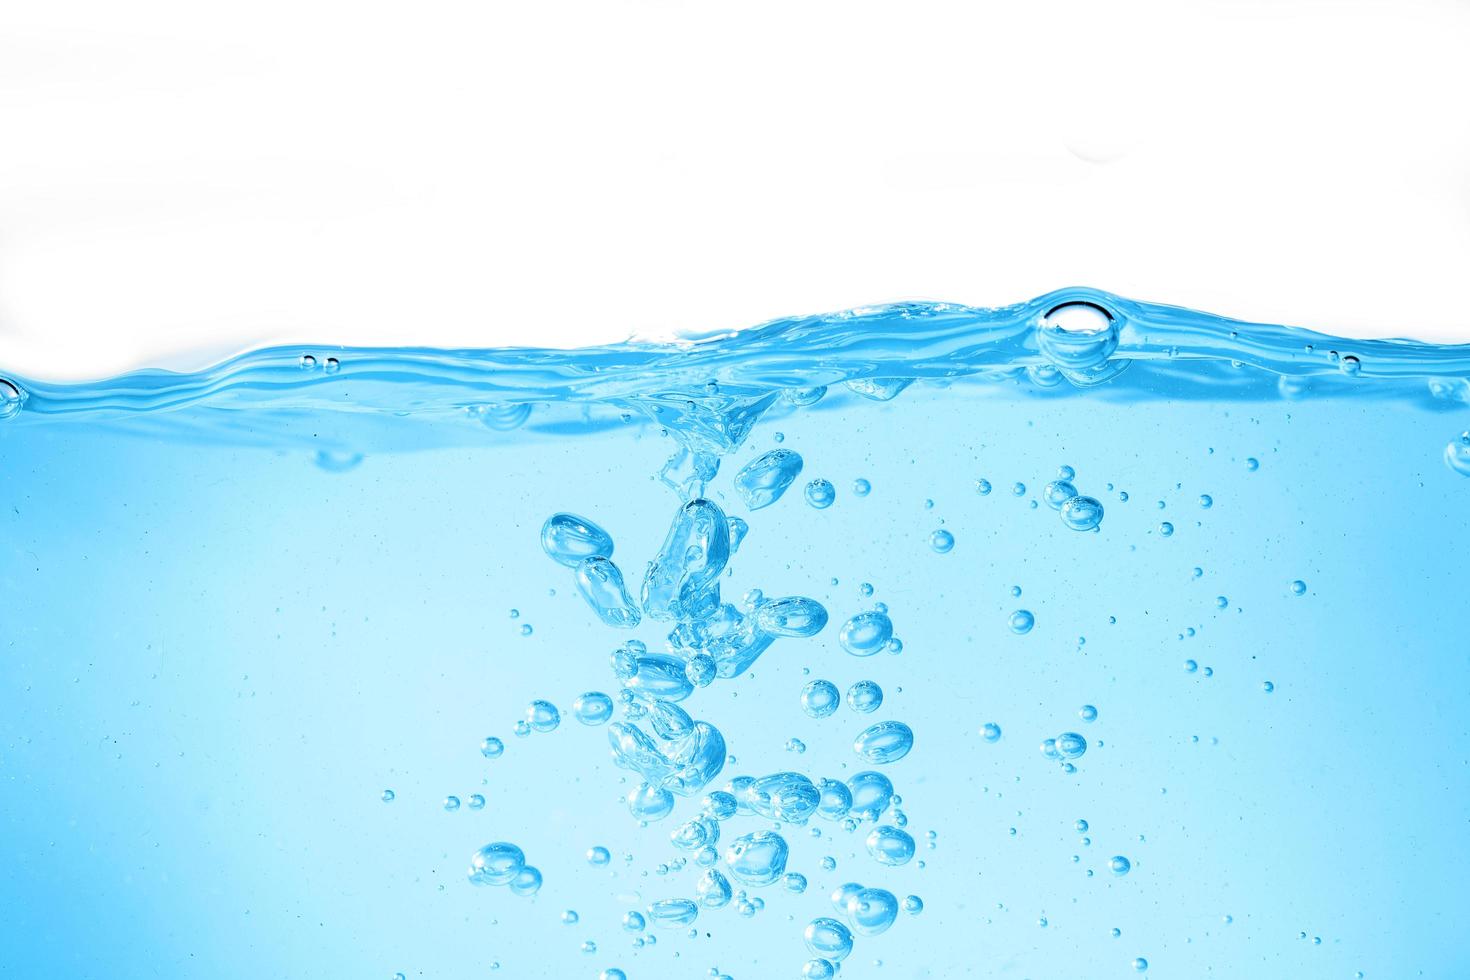 L'eau de surface bleu et bulle d'air isolé sur fond blanc photo